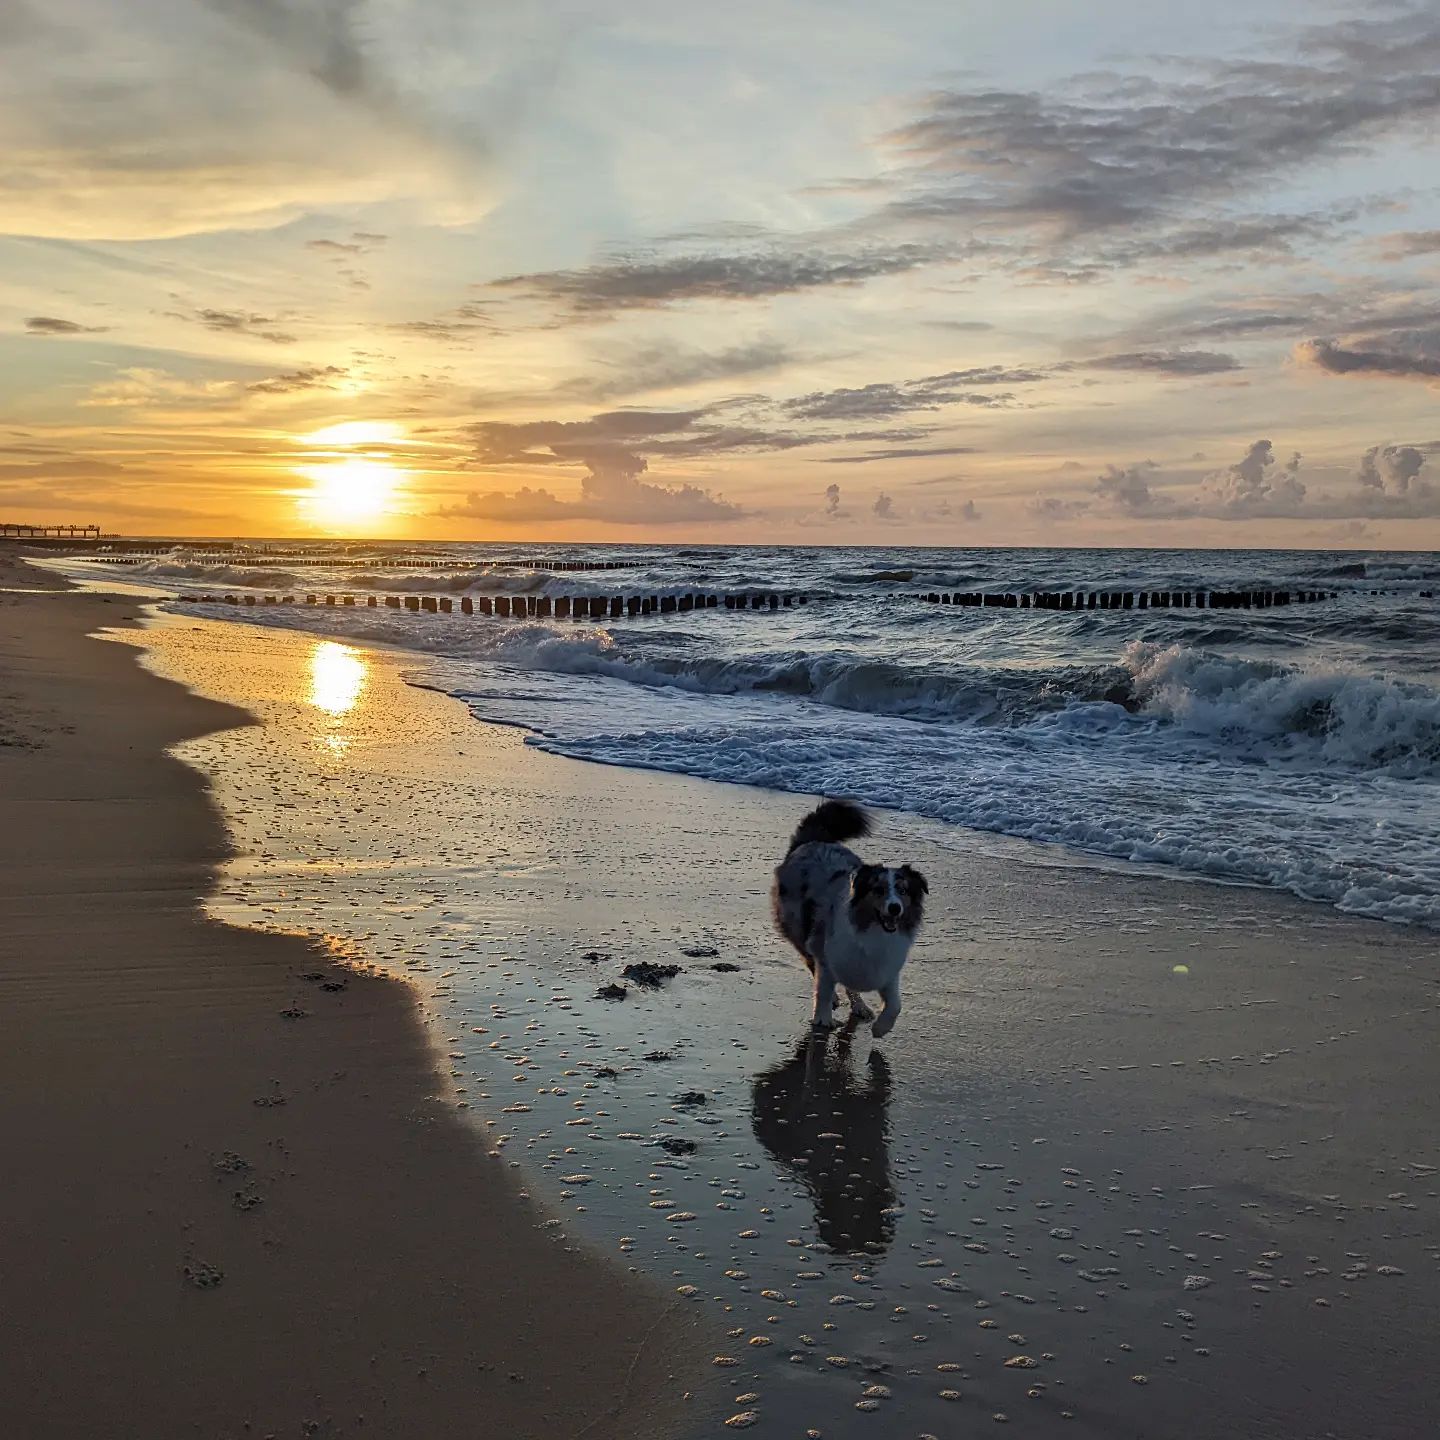 W pełnym biegu 🐕 Nie ma nic piękniejszego niż wrześniowe morze... gdy akurat nie leje jak z cebra 😅

#ginnythedog #owczarekaustralijski #australianshepherd #morze #morzebałtyckie #sea #balticsea #chłopy #zachodsloncanadmorzem #sunsetbythesea #piesnadmorzem #dogsbythebay #bałtyckaplaża #balticbeach #sunsetdog #piesozachodziesłońca #zpsemnadmorzem #seatrip #bieganiepoplaży #runningonthebeach #balticlovers #pieskiezycie #dogsarelife